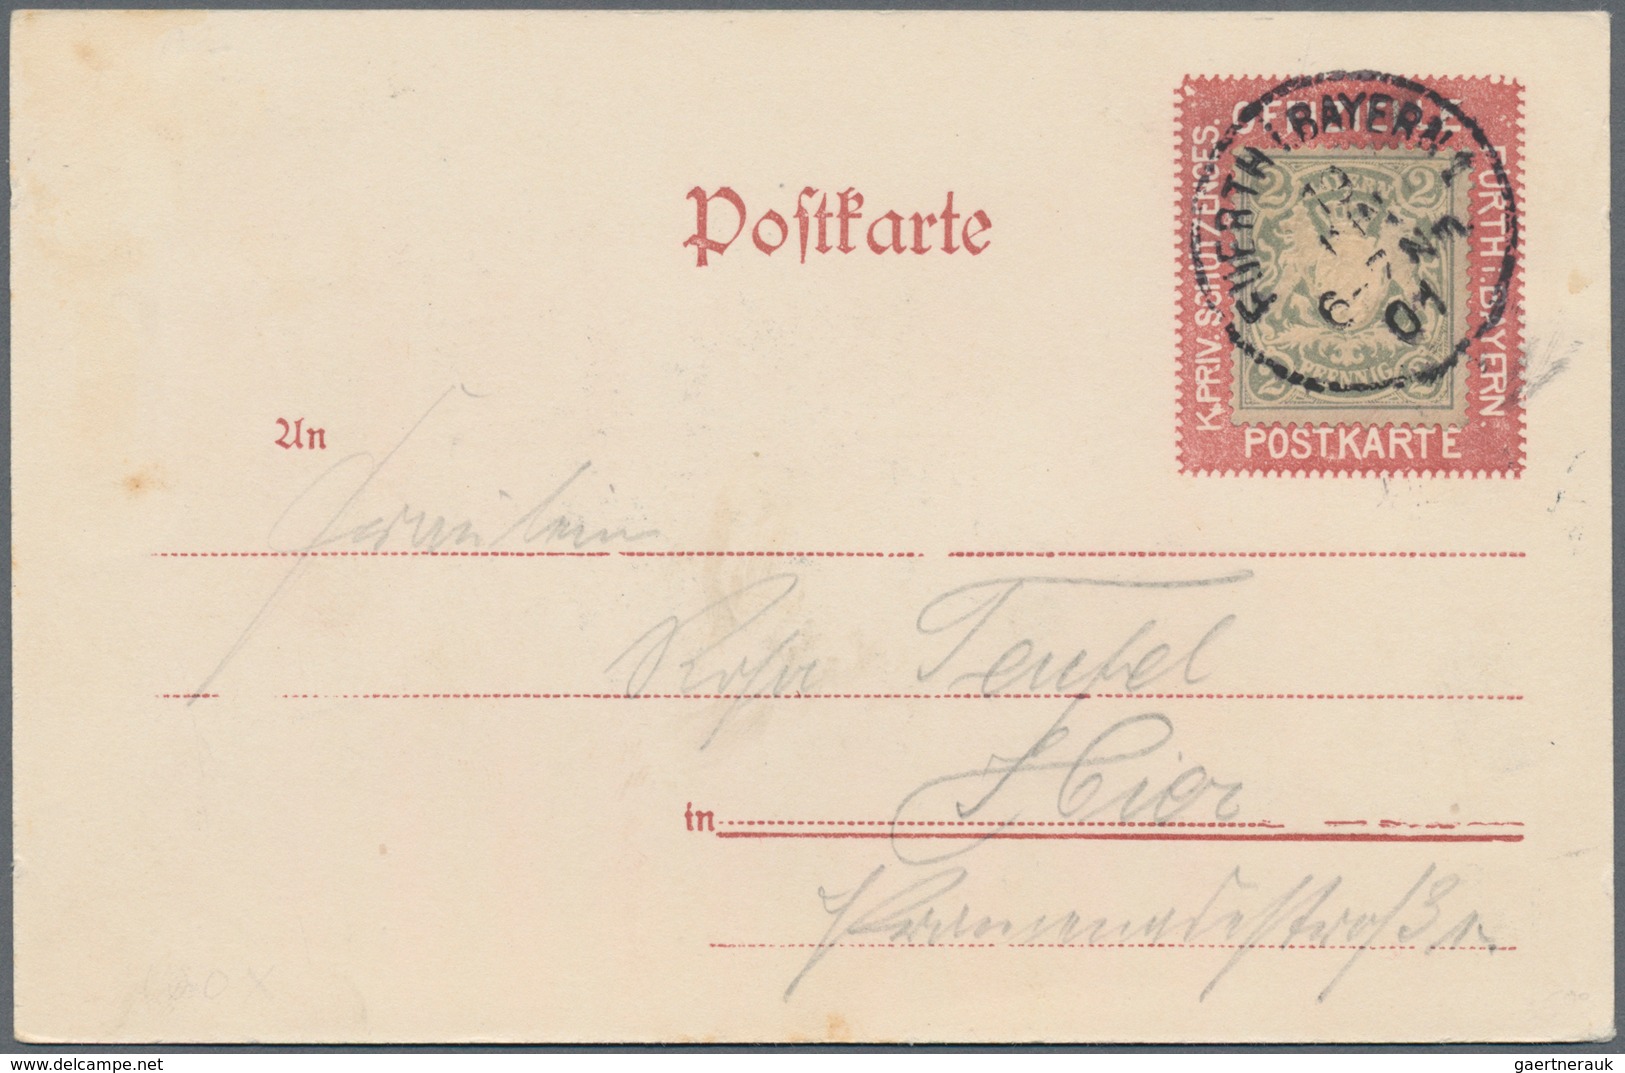 Bayern - Marken und Briefe: 1852/1920, Konvolut von 37 Belegen mit Verwendungen im ORTSVERKEHR, dabe